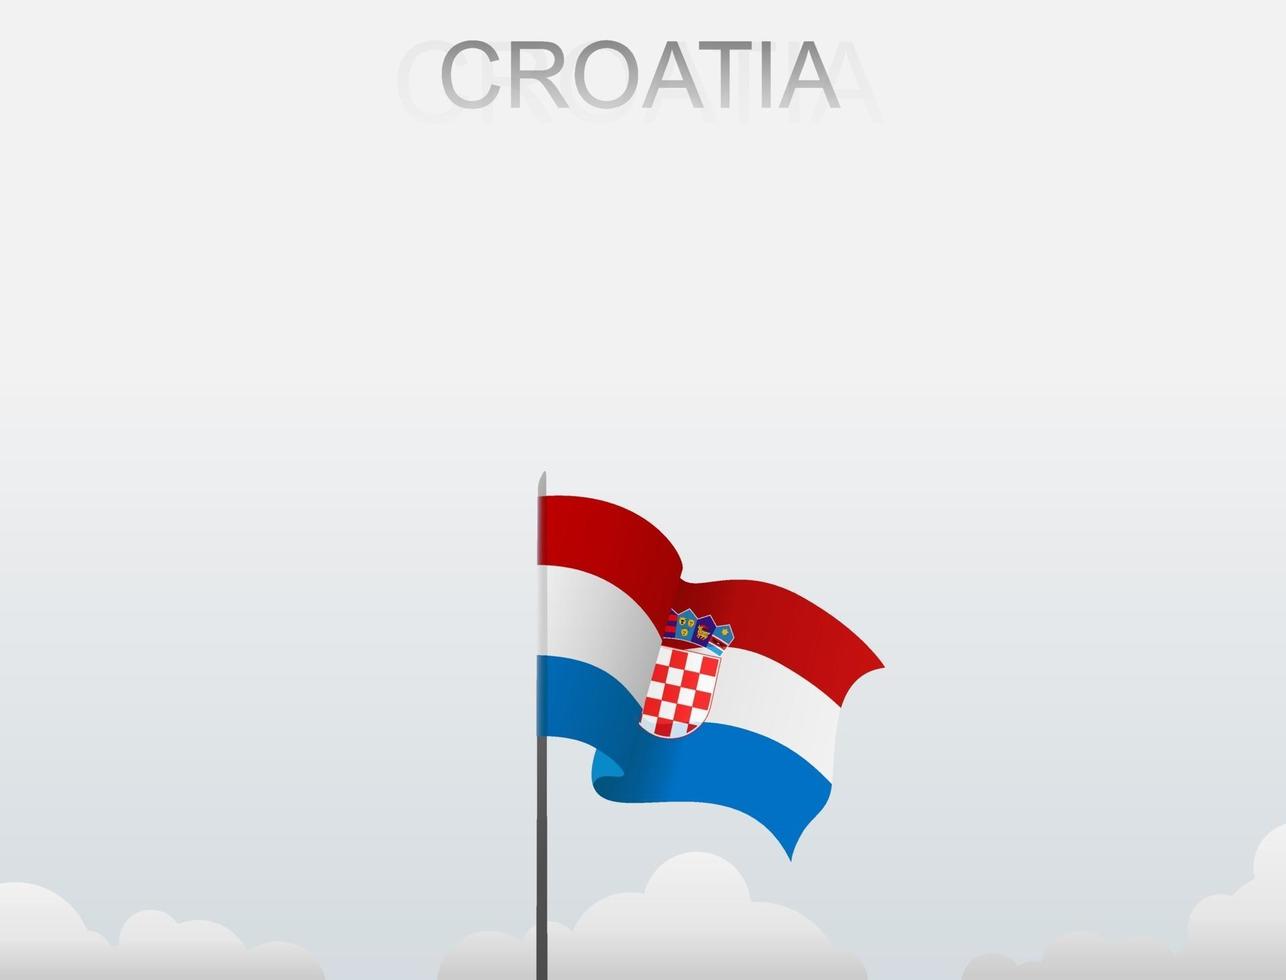 a bandeira da croácia está hasteada em um mastro alto sob o céu branco vetor